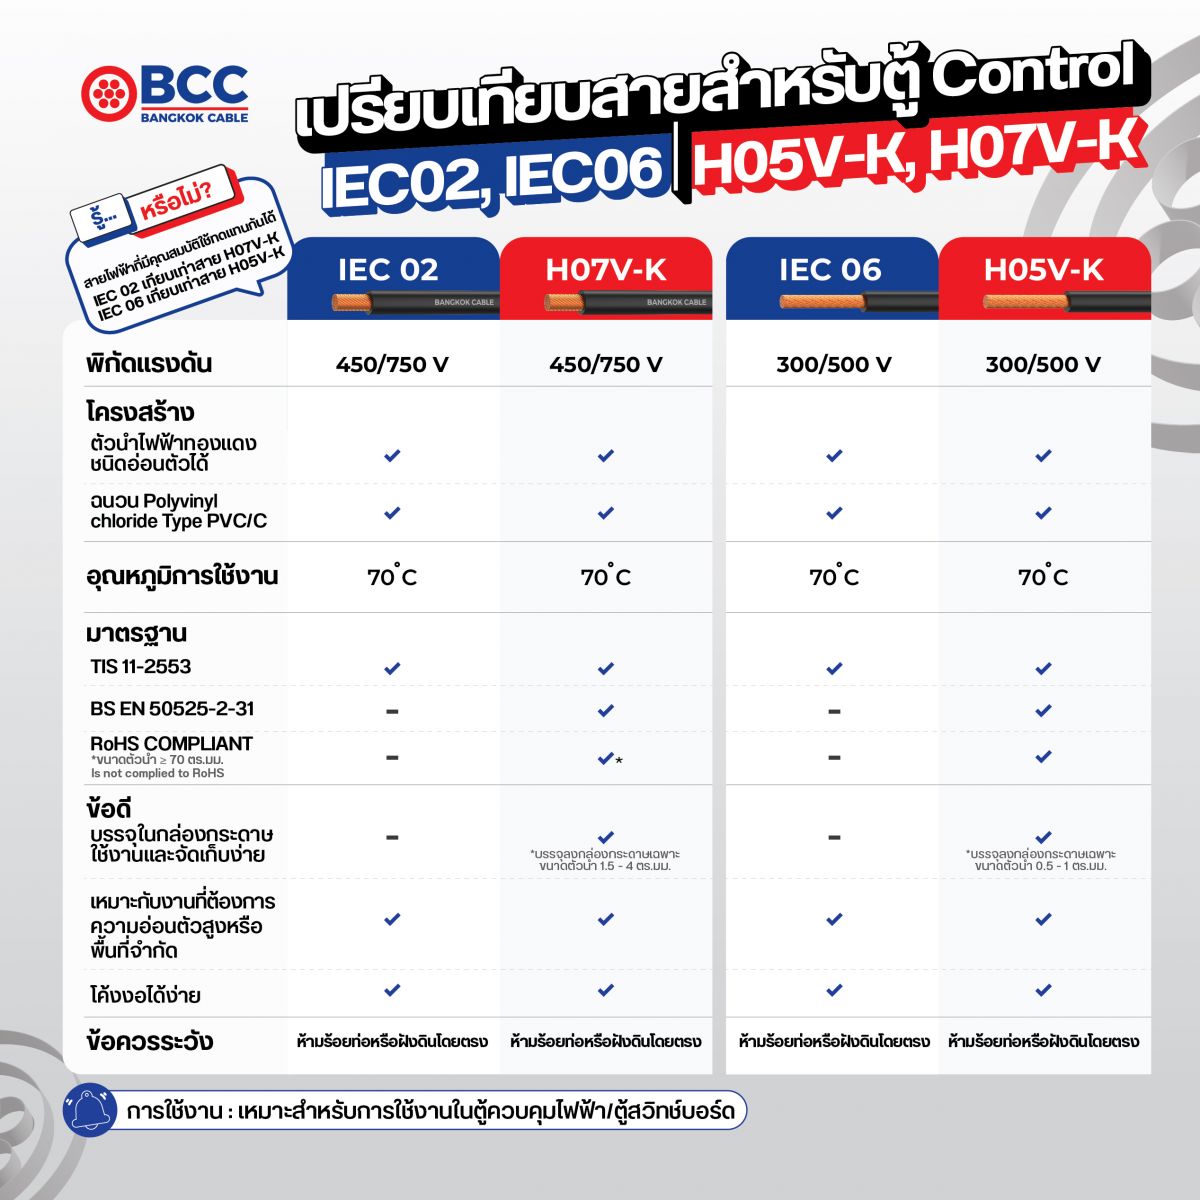 เปรียบเทียบสายไฟฟ้าสำหรับใช้งานในตู้ควบคุมไฟฟ้า/ตู้สวิทช์บอร์ด Bangkok Cable BCC